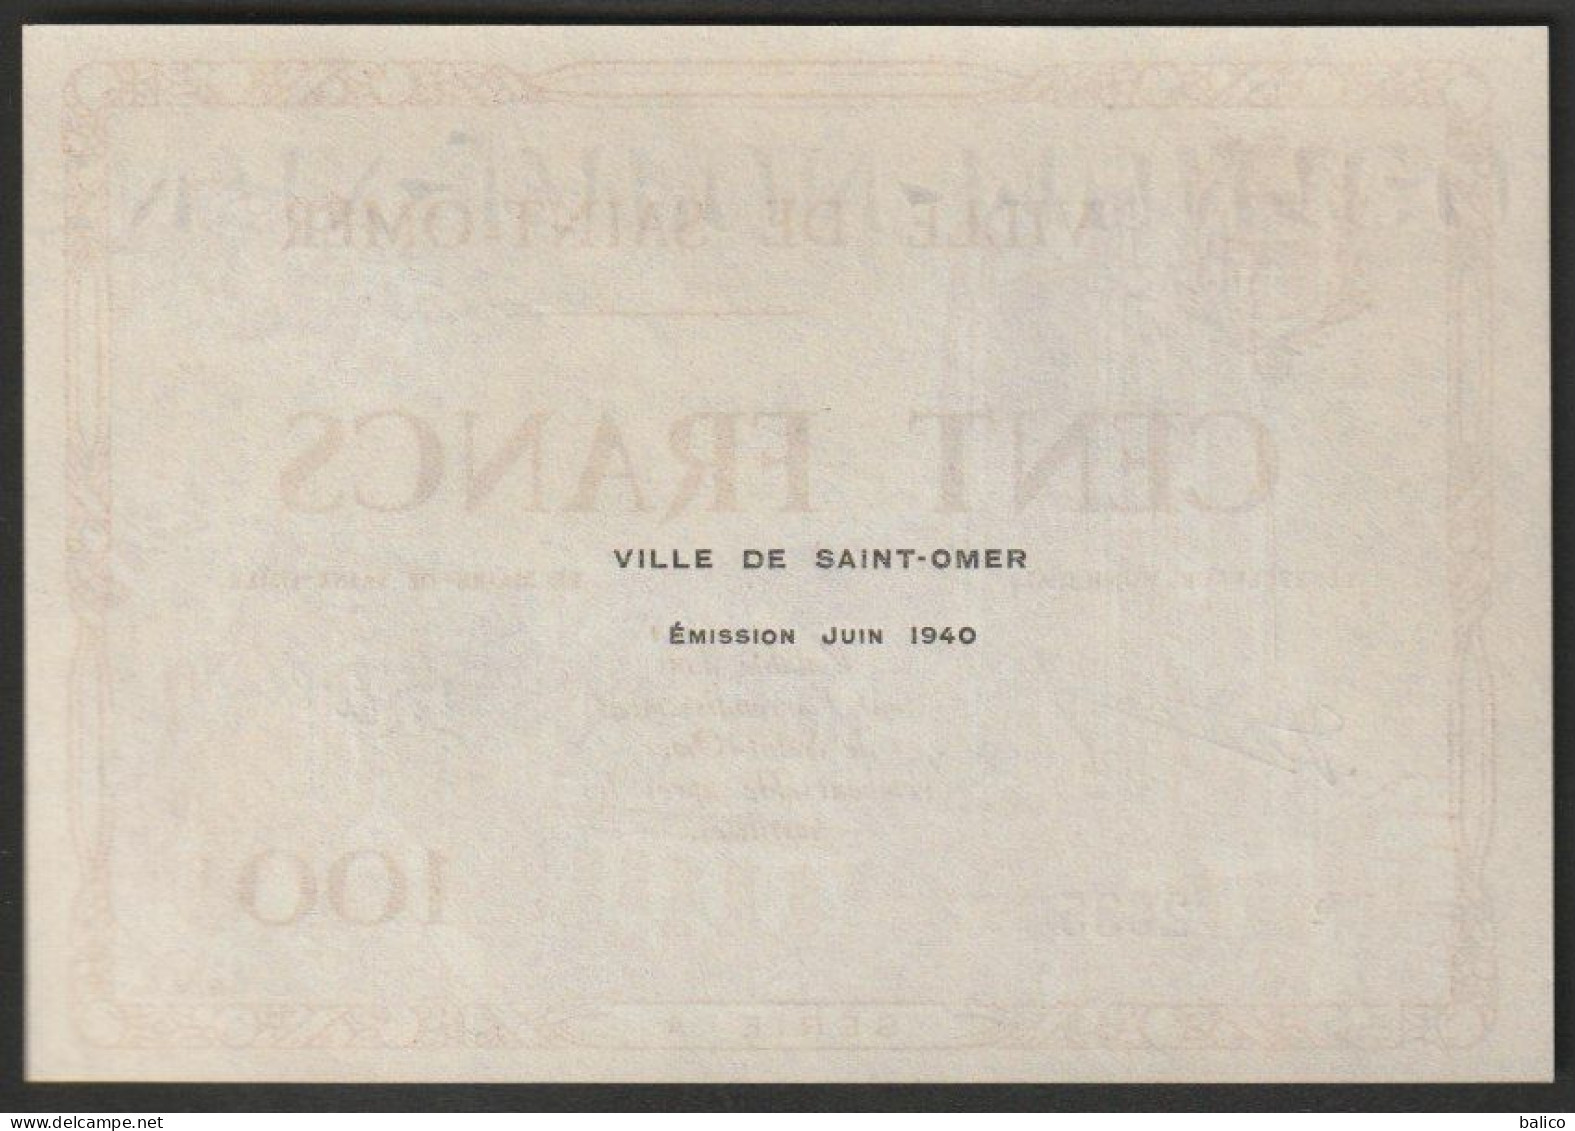 BILLET NECESSITE - VILLE De SAINT-OMER - 100 Francs Série A  émission  N° 2635 - Juin 1940   (superbe, Neuf) - Bonos